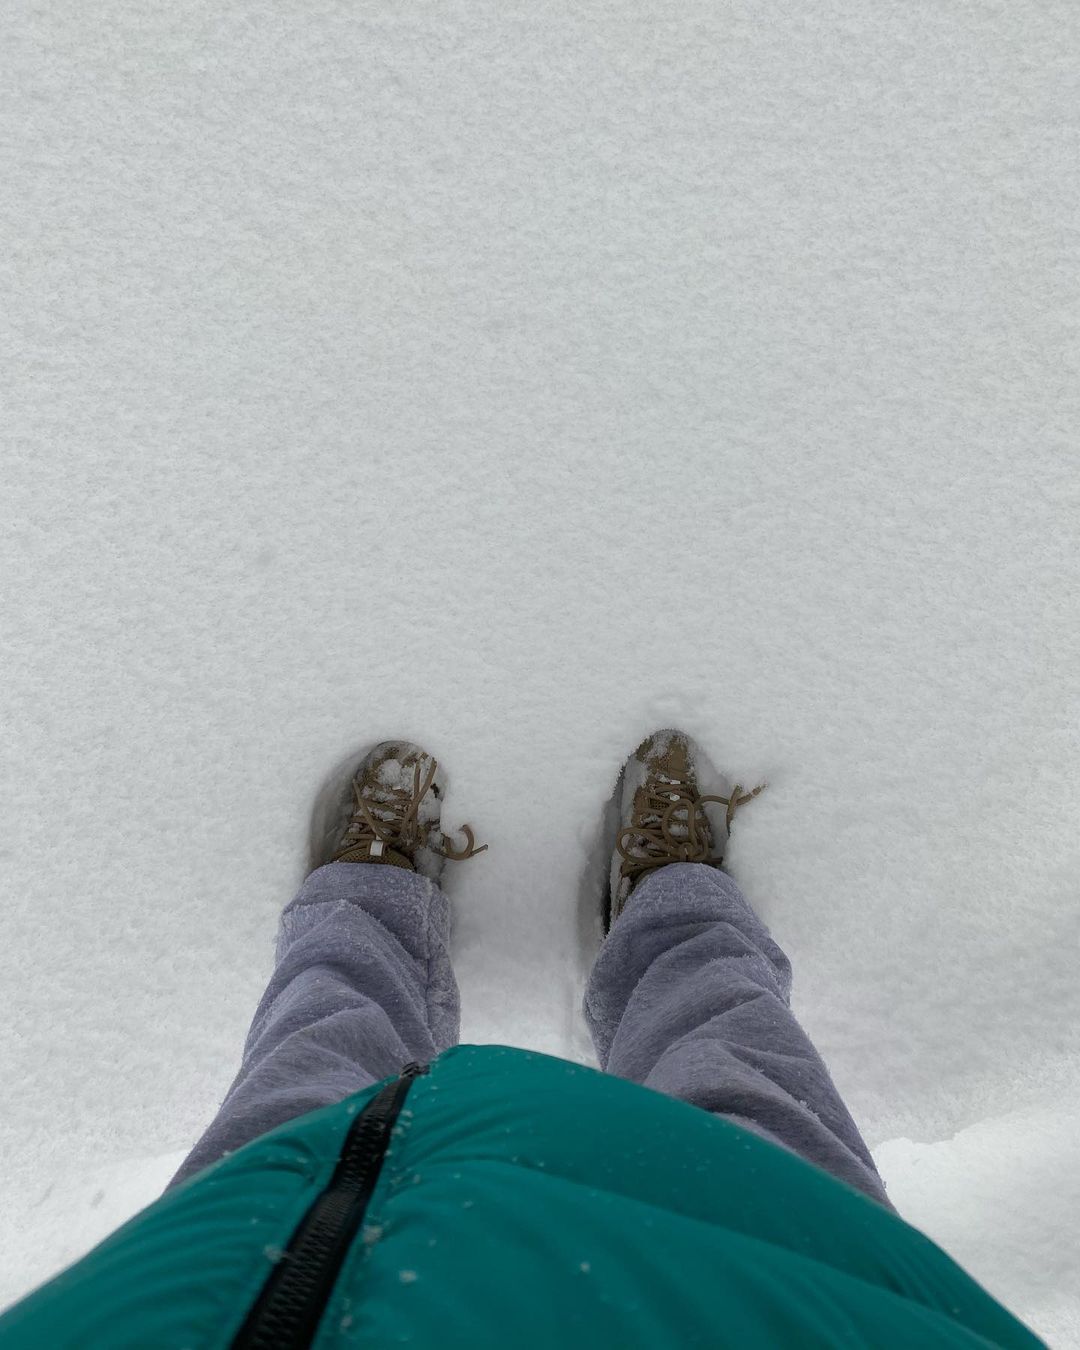 Emily Ratajkowski Enjoys a Snow Day! - Photo 1